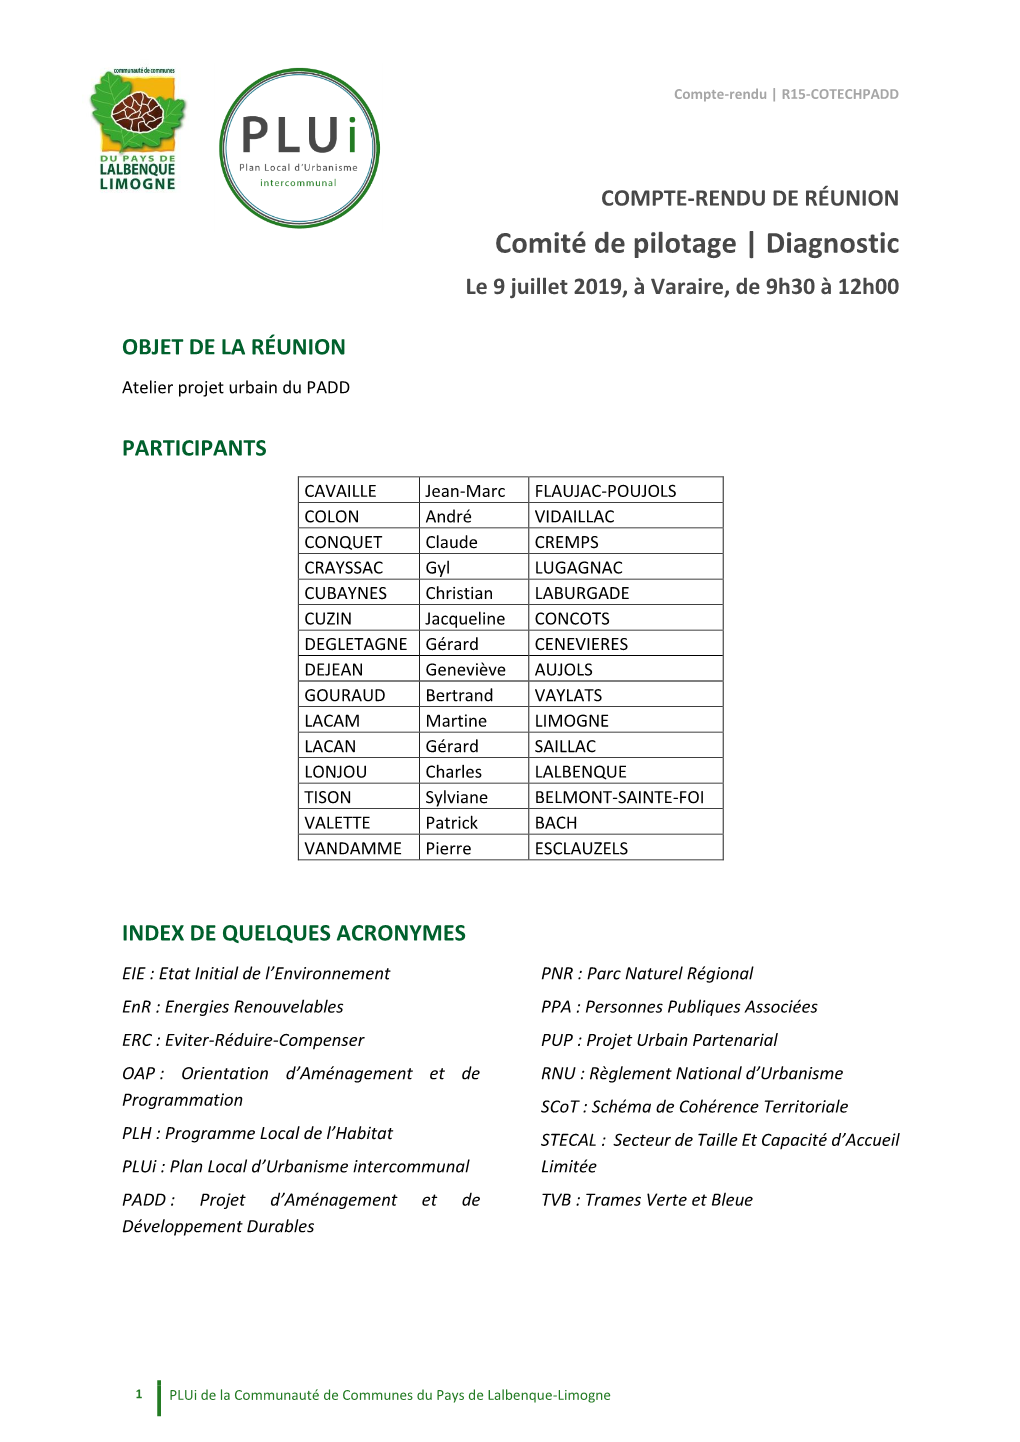 Comité De Pilotage | Diagnostic Le 9 Juillet 2019, À Varaire, De 9H30 À 12H00